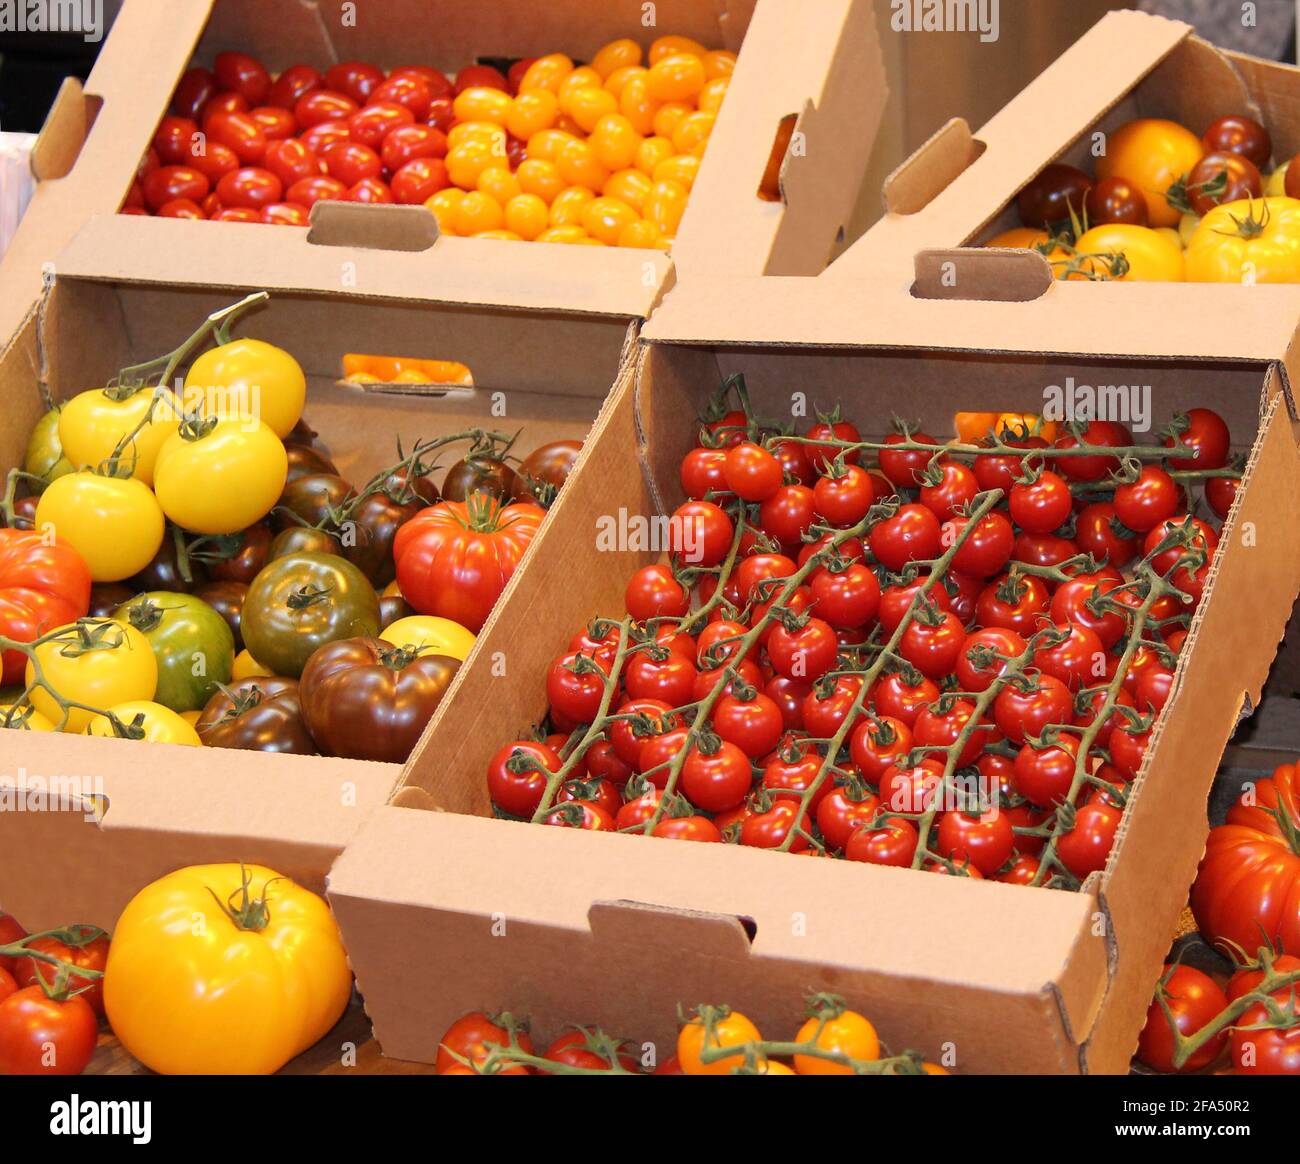 Ein Display mit verschiedenen Farben und Größen von Tomaten. Stockfoto